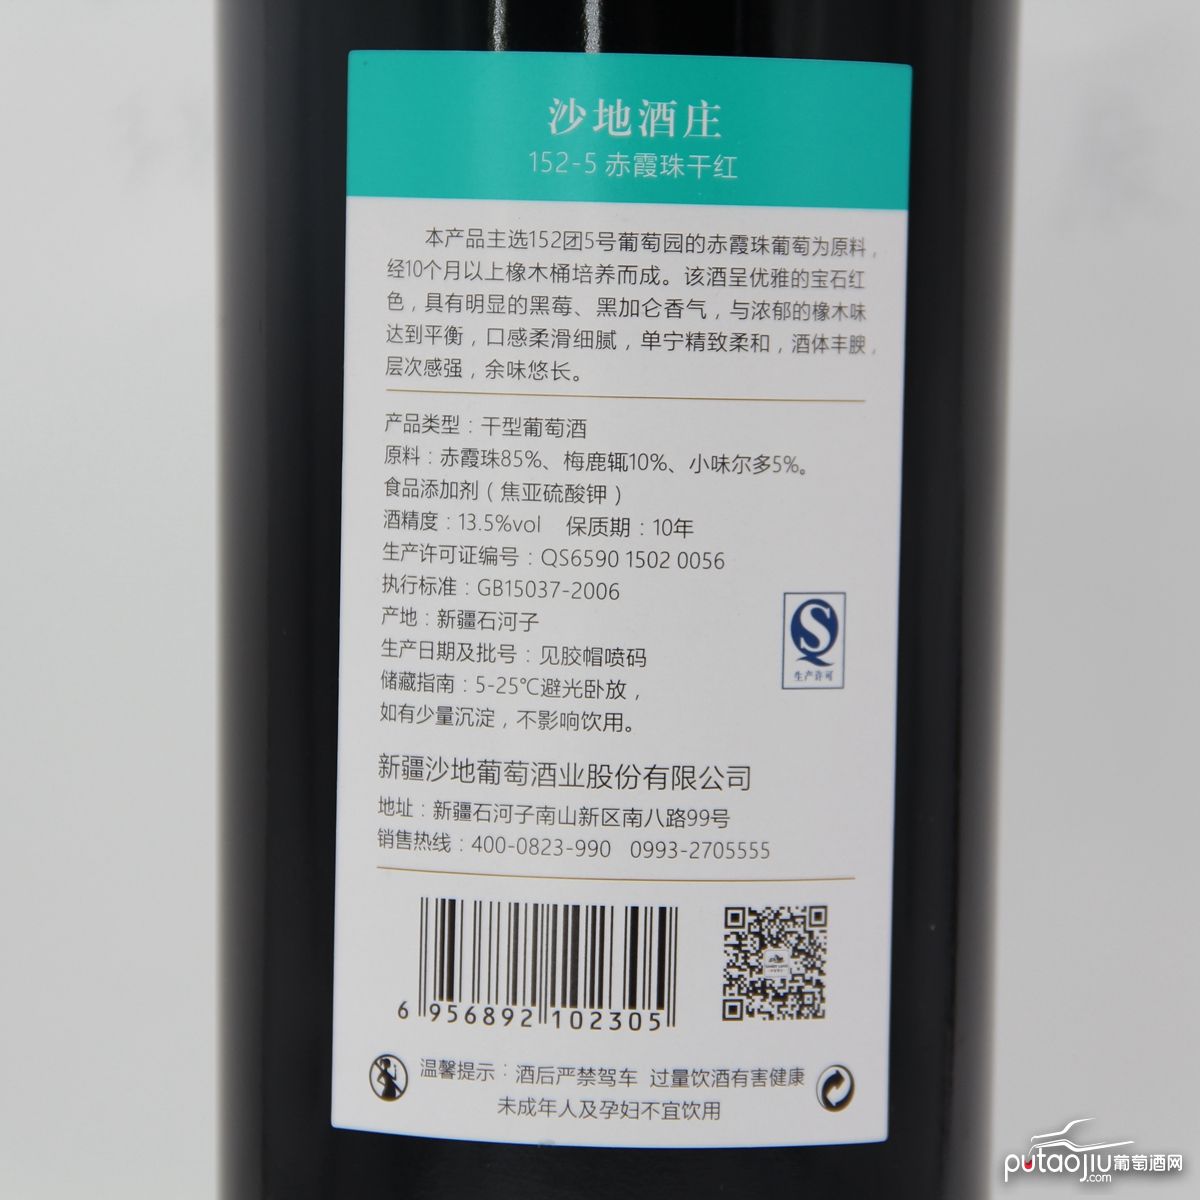 中国新疆产区沙地酒庄 赤霞珠152-5窖藏干红葡萄酒